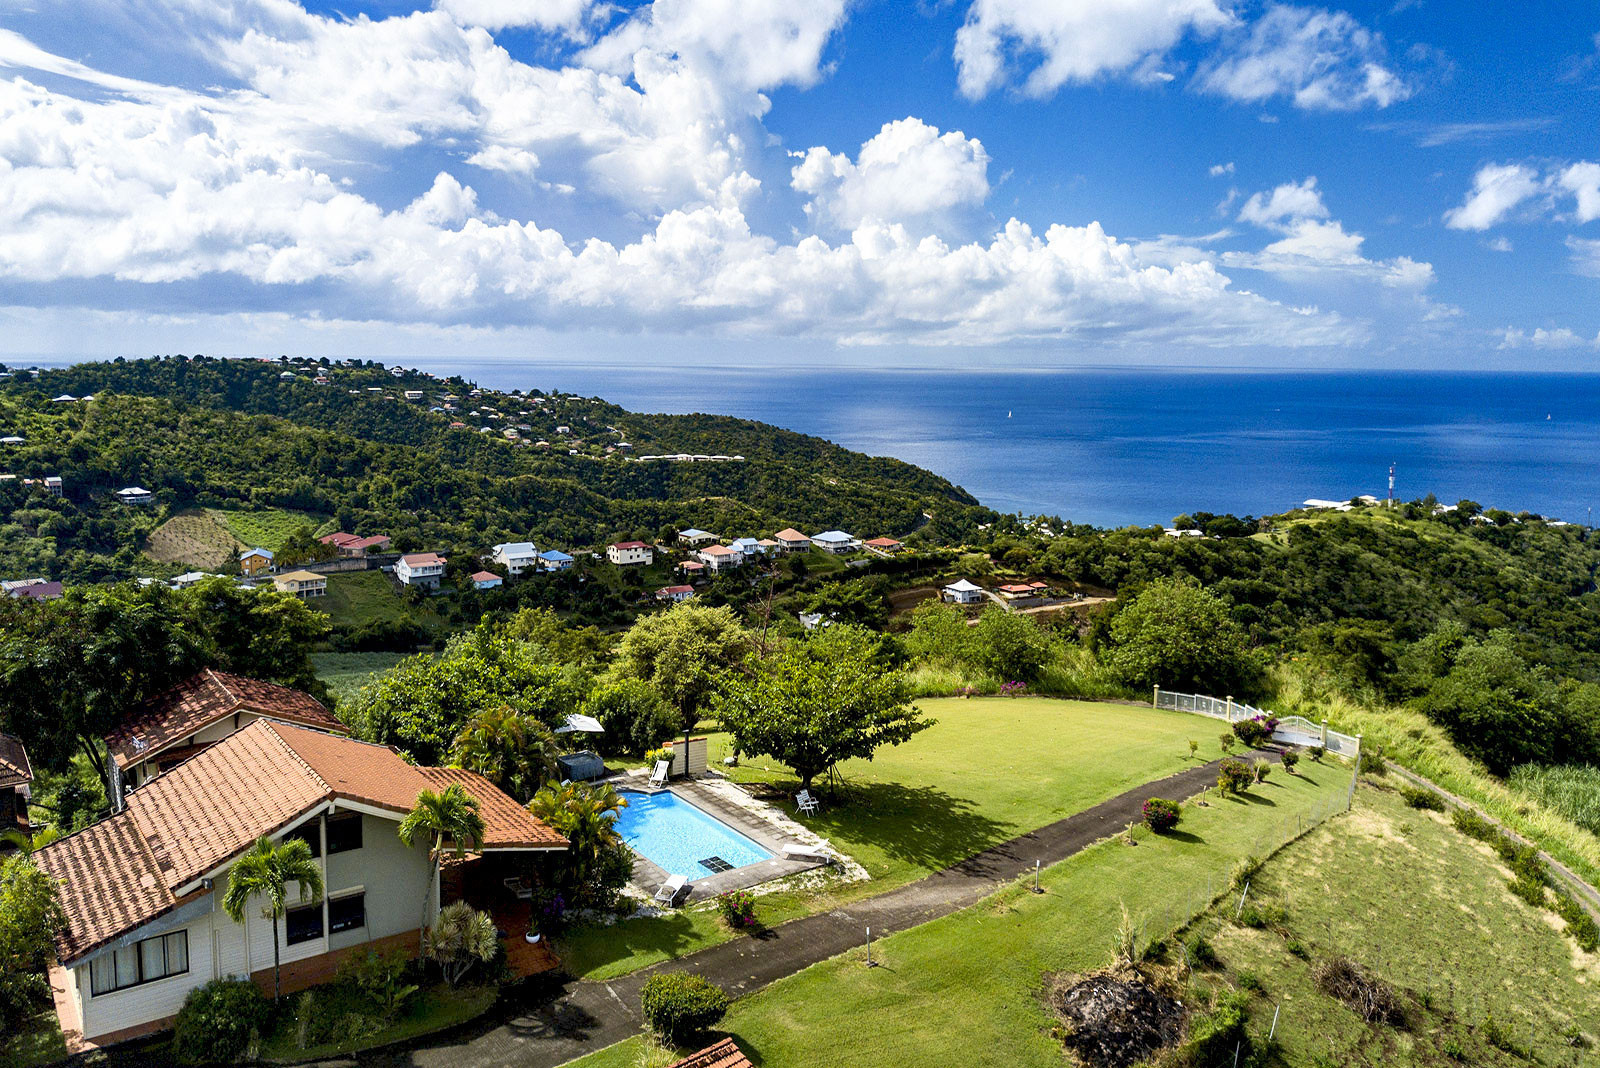 MUSCENDA Luxury Villa 5 stars Martinique le Carbet sea view pool and spa - 